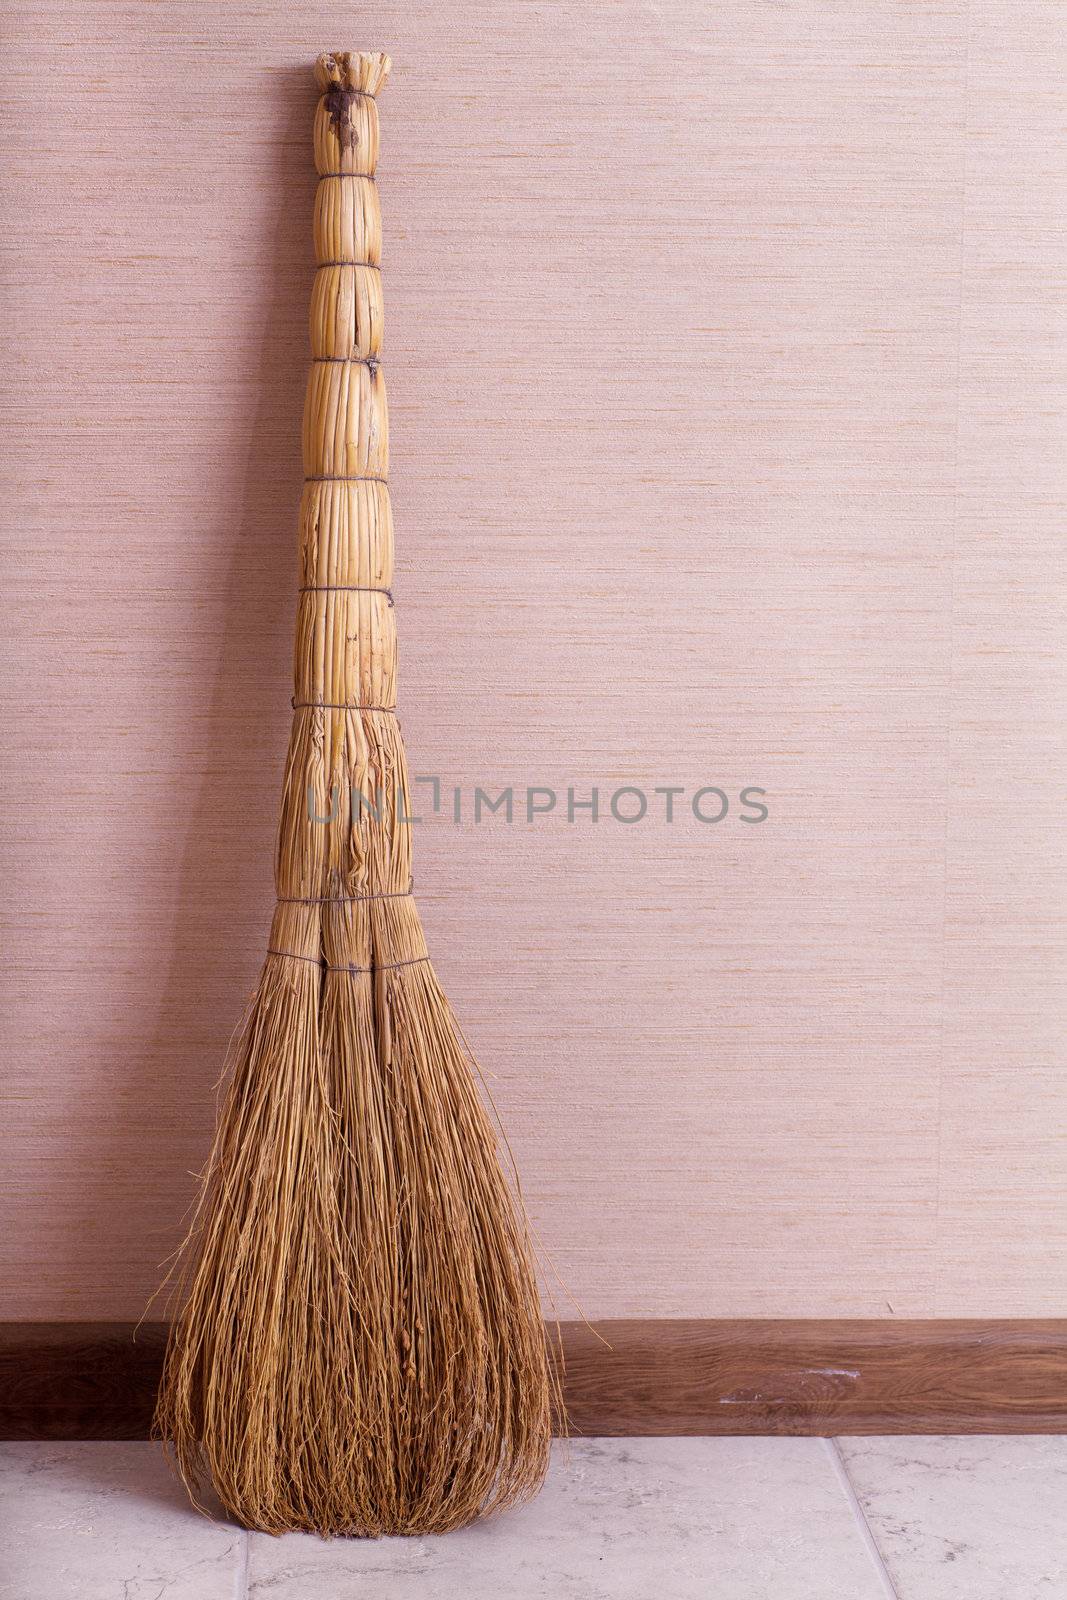 Whisk broom standing in empty room